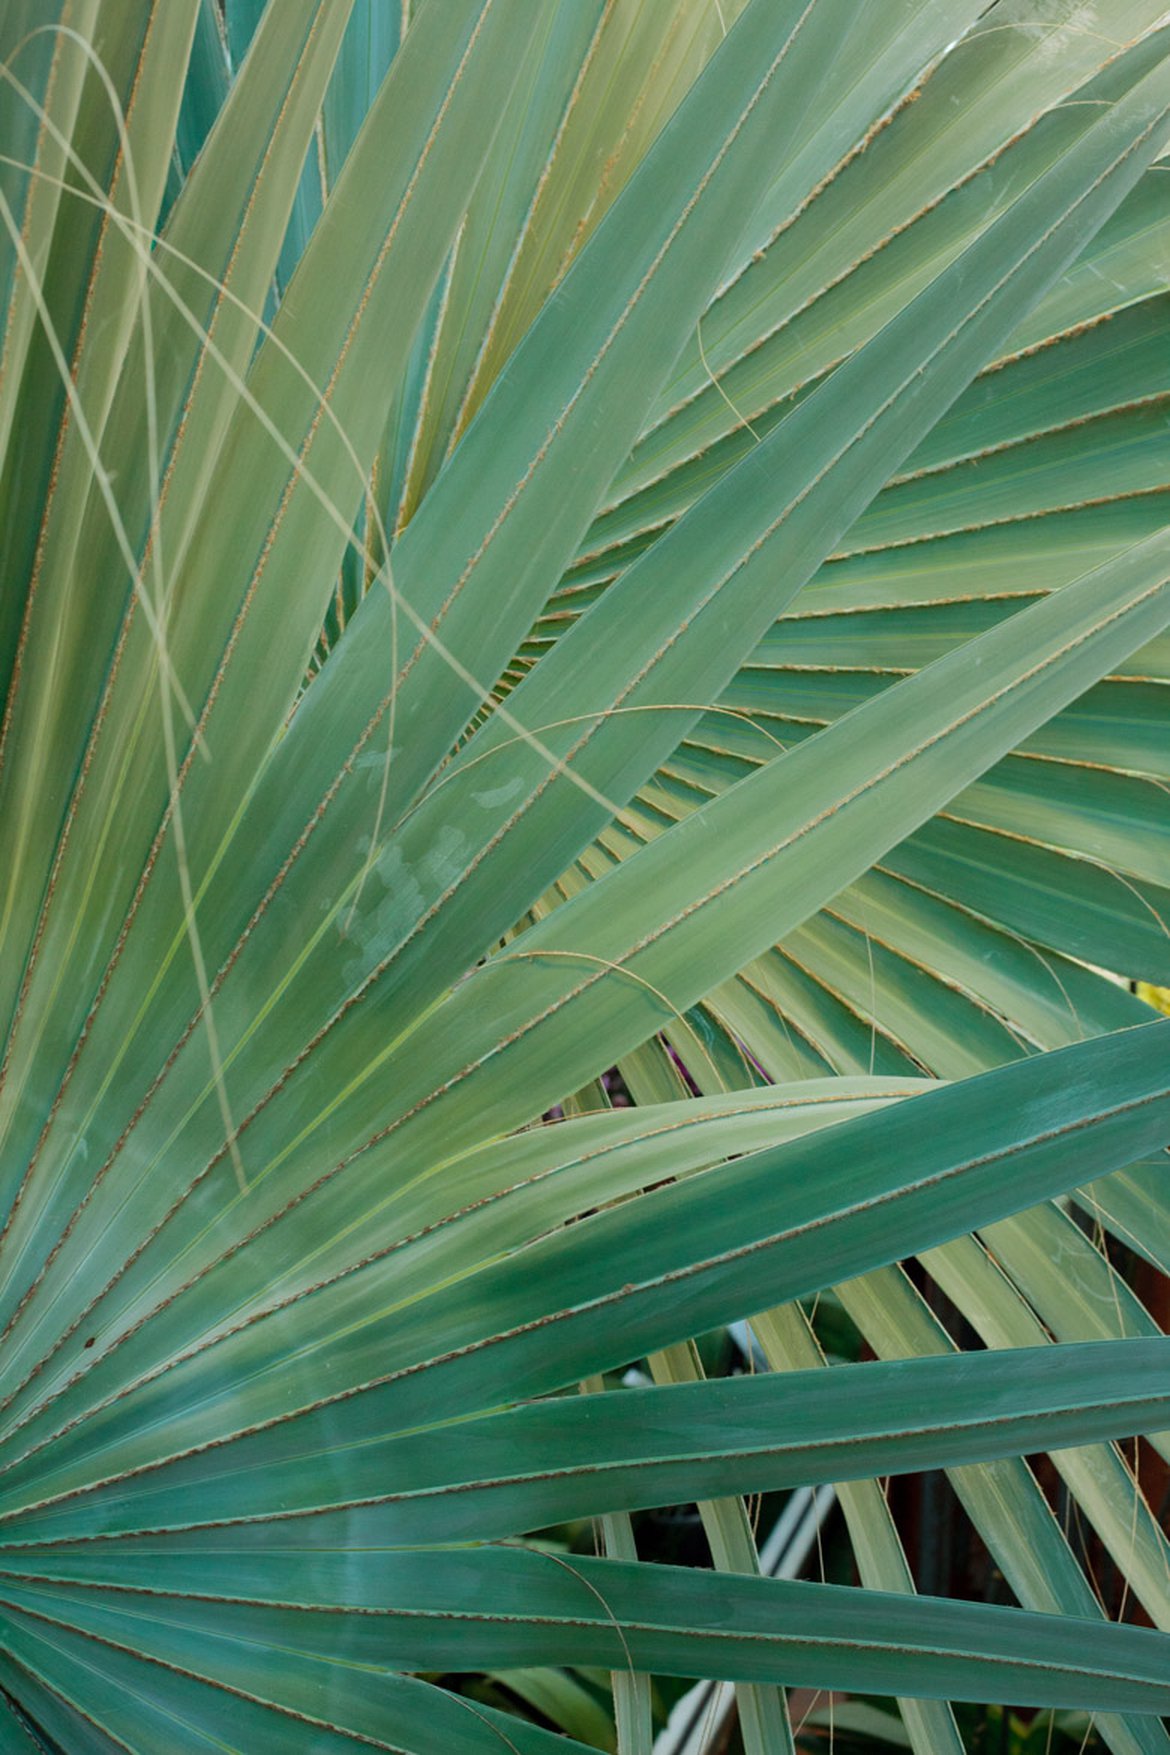 Palme de palmier - Plantes exotique et végétaux chaud - Inspirations végétales du magazine Schilliger 2022